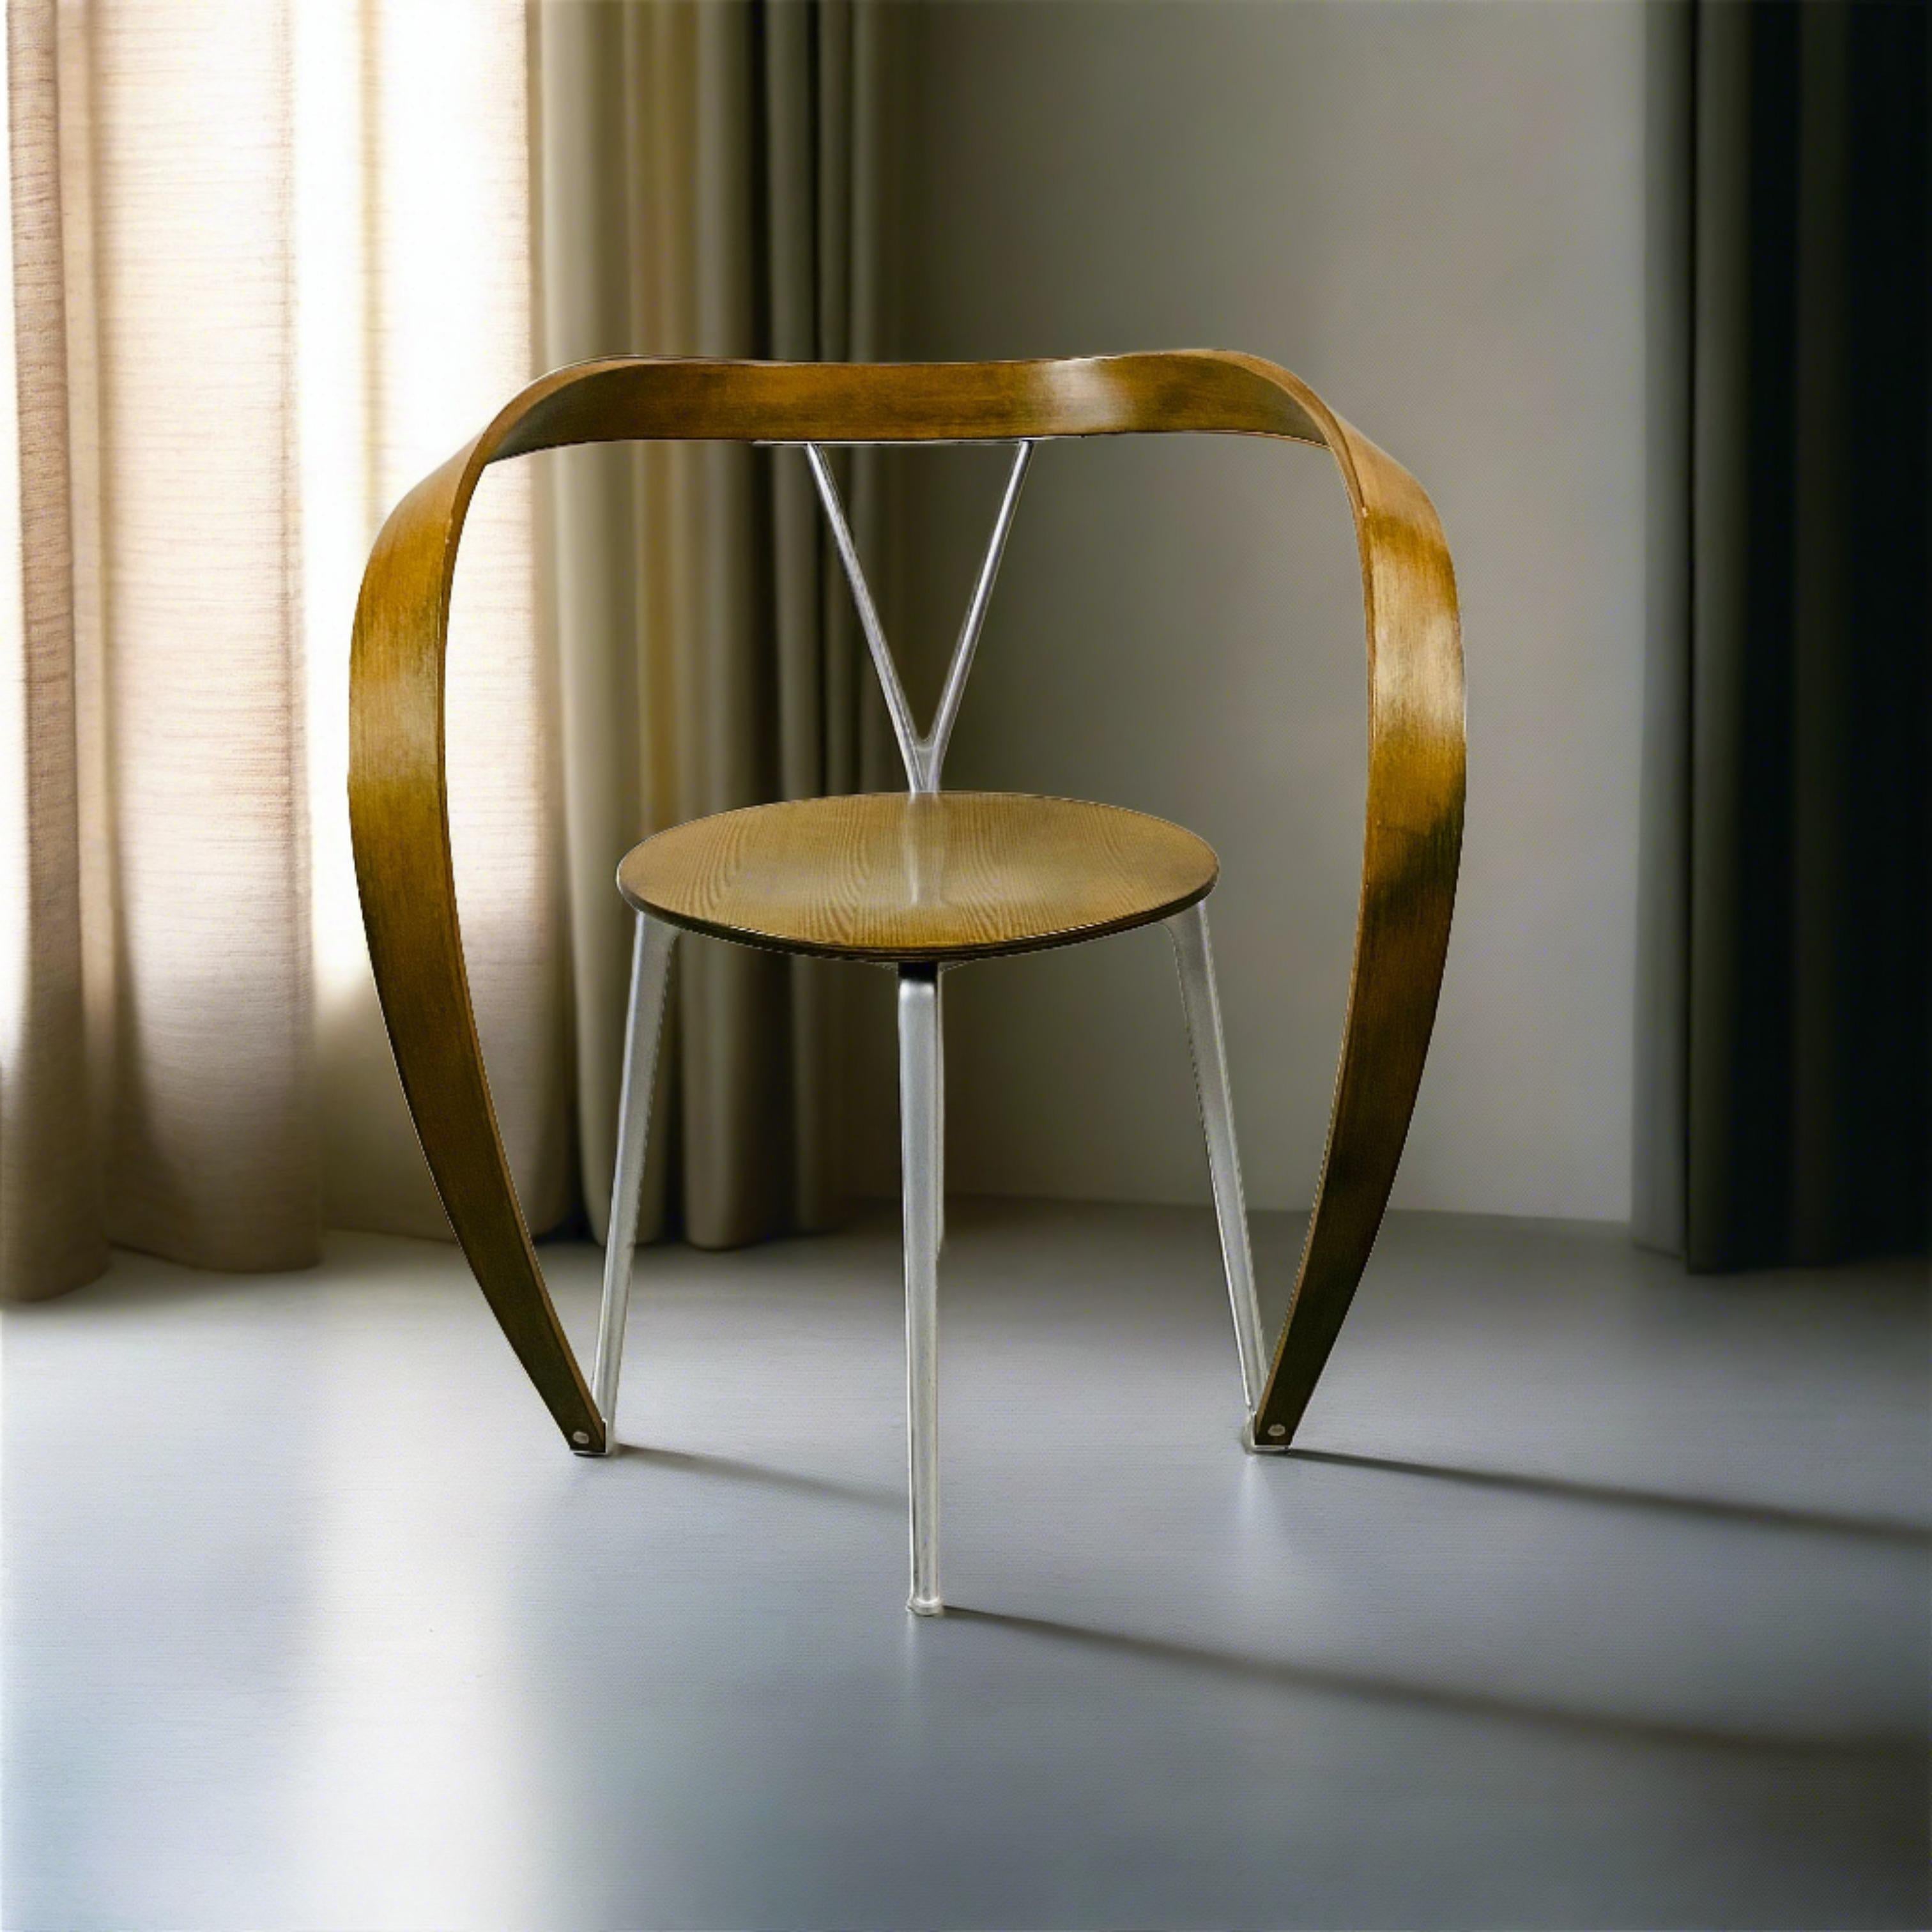 Une pièce intemporelle de l'histoire du design - la chaise Revere d'Andrea Branzi pour Cassina. Ce fauteuil emblématique, datant de la fin du XXe siècle (CIRCA 1993), témoigne de l'attrait durable d'un travail artisanal soigné et d'un design